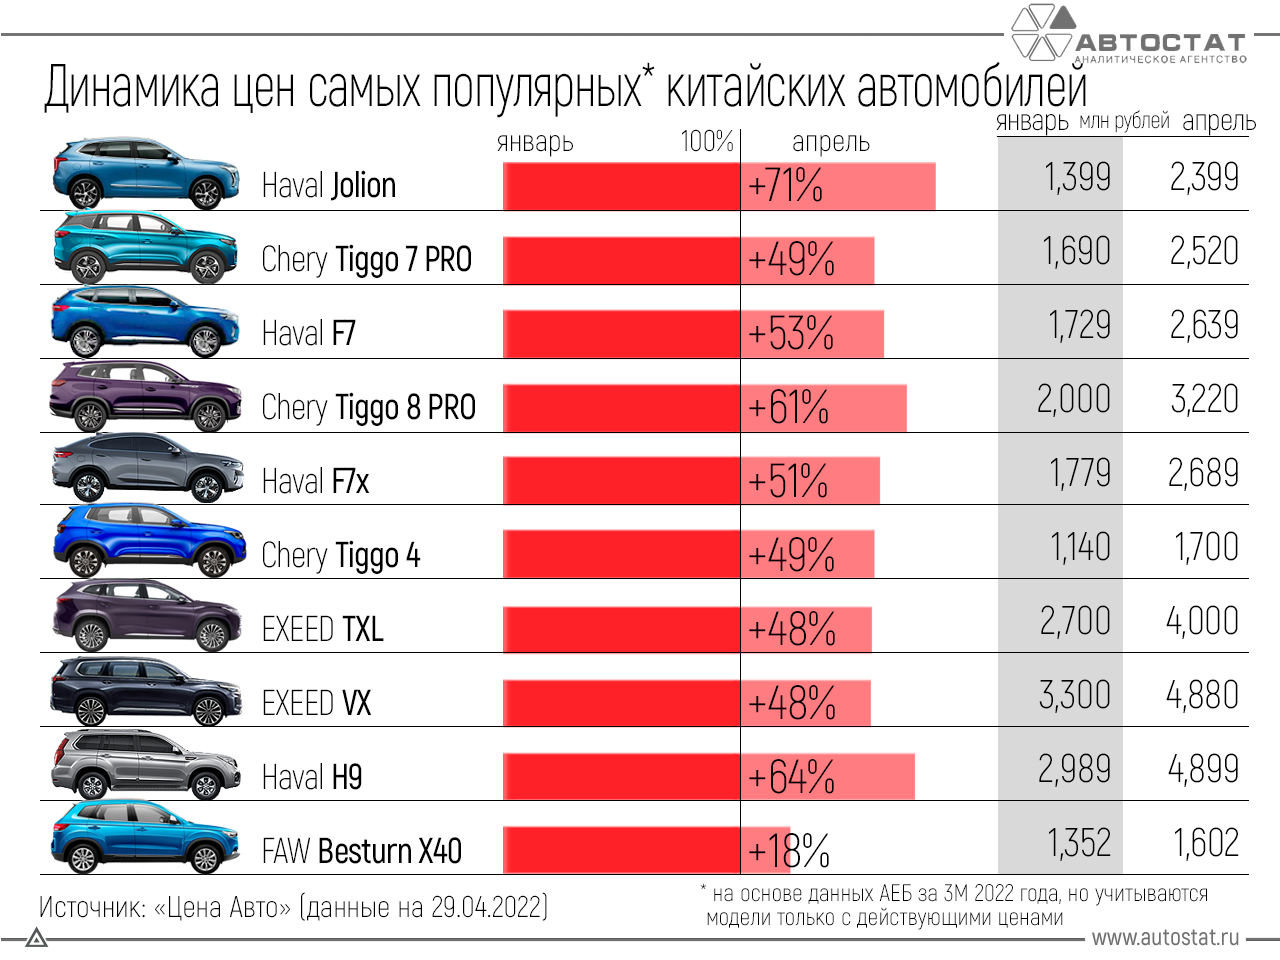 Какая марка авто лучше. Самые продаваемые автомобили. Популярные автомобили в России 2022. Самая продаваемая машина. Самые популярные машины в РФ.